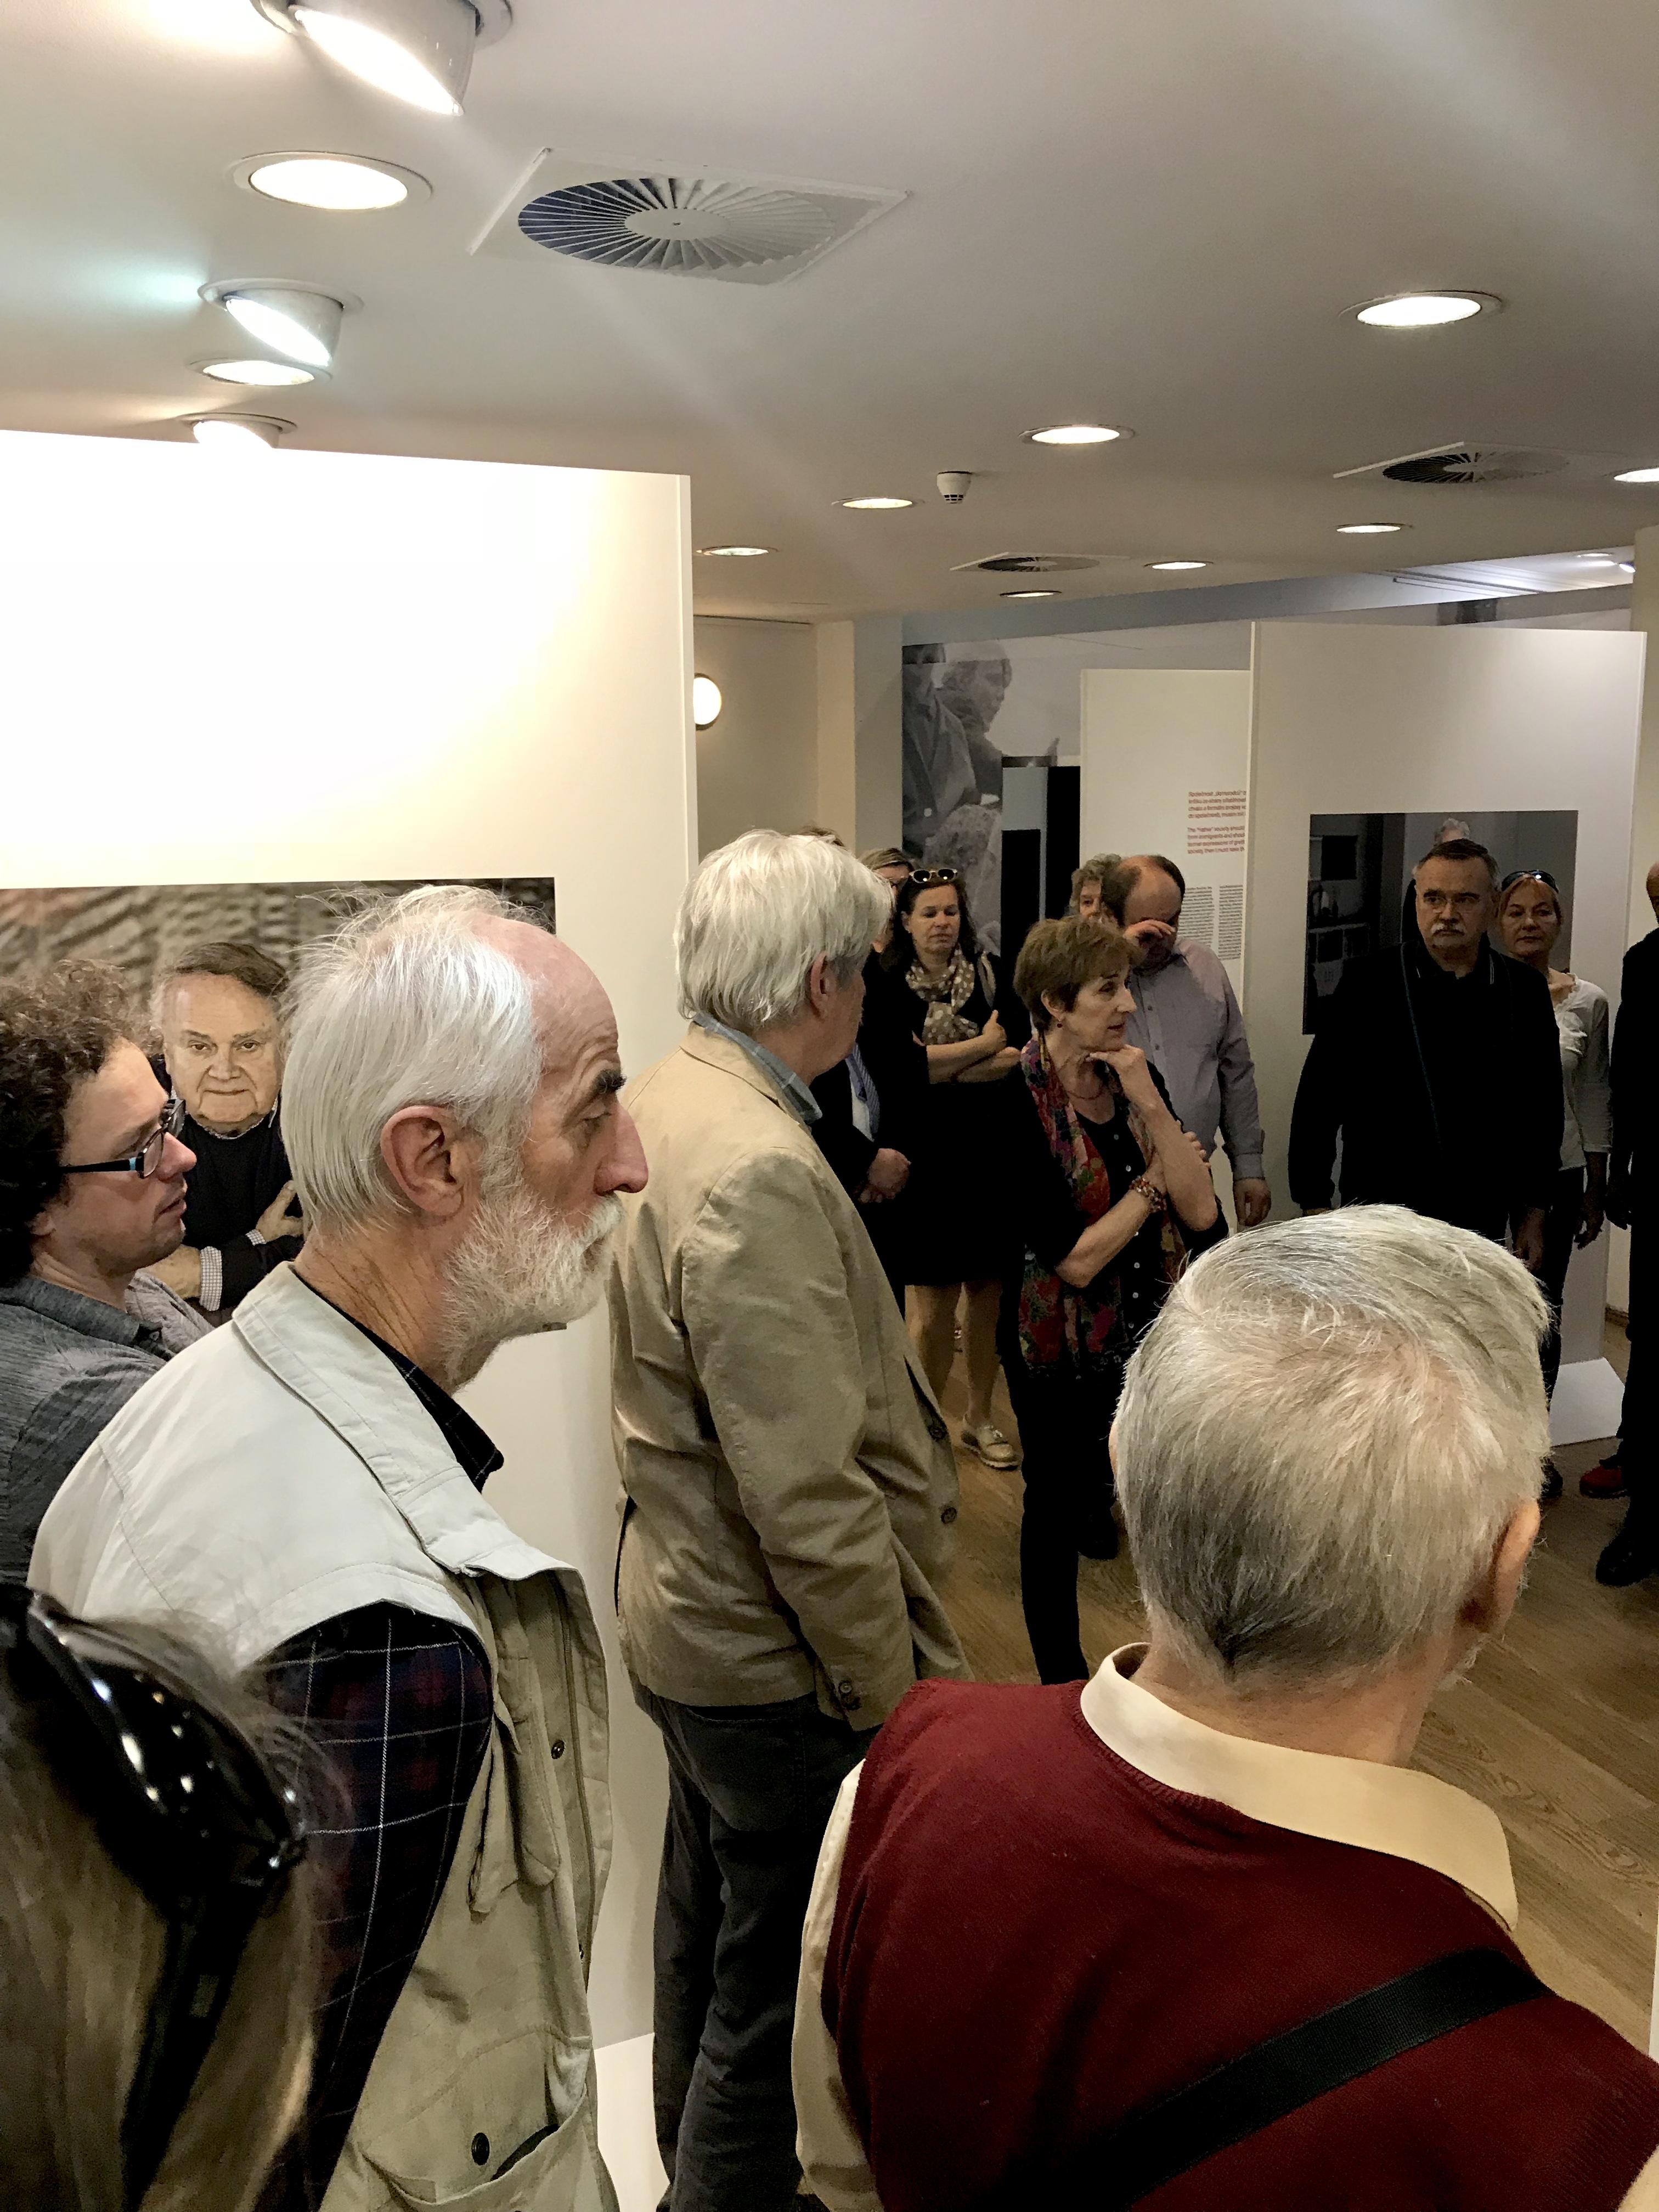 Am 10.04. 2018 hat in der Galerie kritiku die kommentierte Führung stattgefunden. Durch die Ausstellung hat die anwesenden Gäste die Fotografin Iren Stehli geführt.